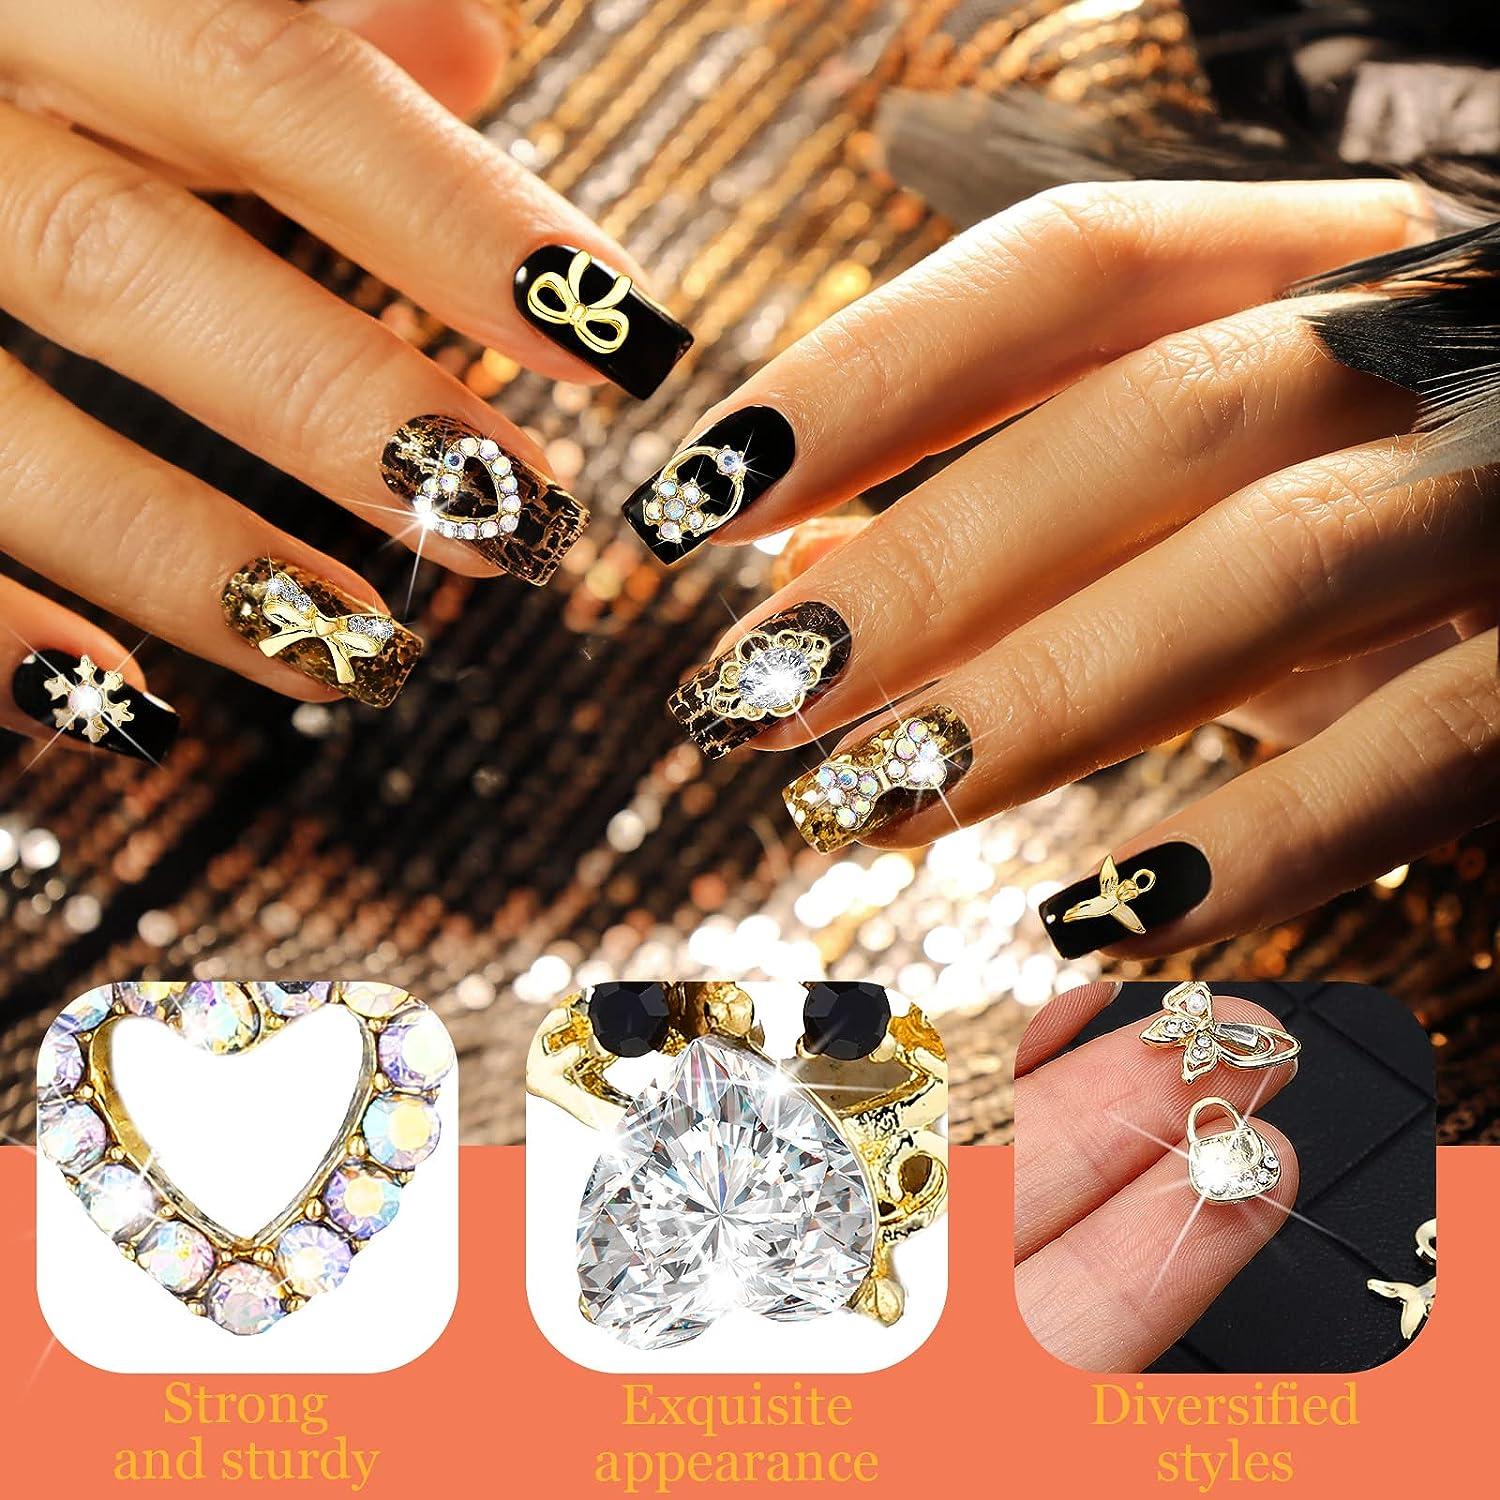 100 Pcs Gold Nail Charms for Acrylic Nails Gold Nail Rhinestones 3D Nail  Charms Heart Nail Gems Luxury Decor Diamonds for Nail Art Shiny Nail Stones  Beauty Nail Design Crystals for DIY